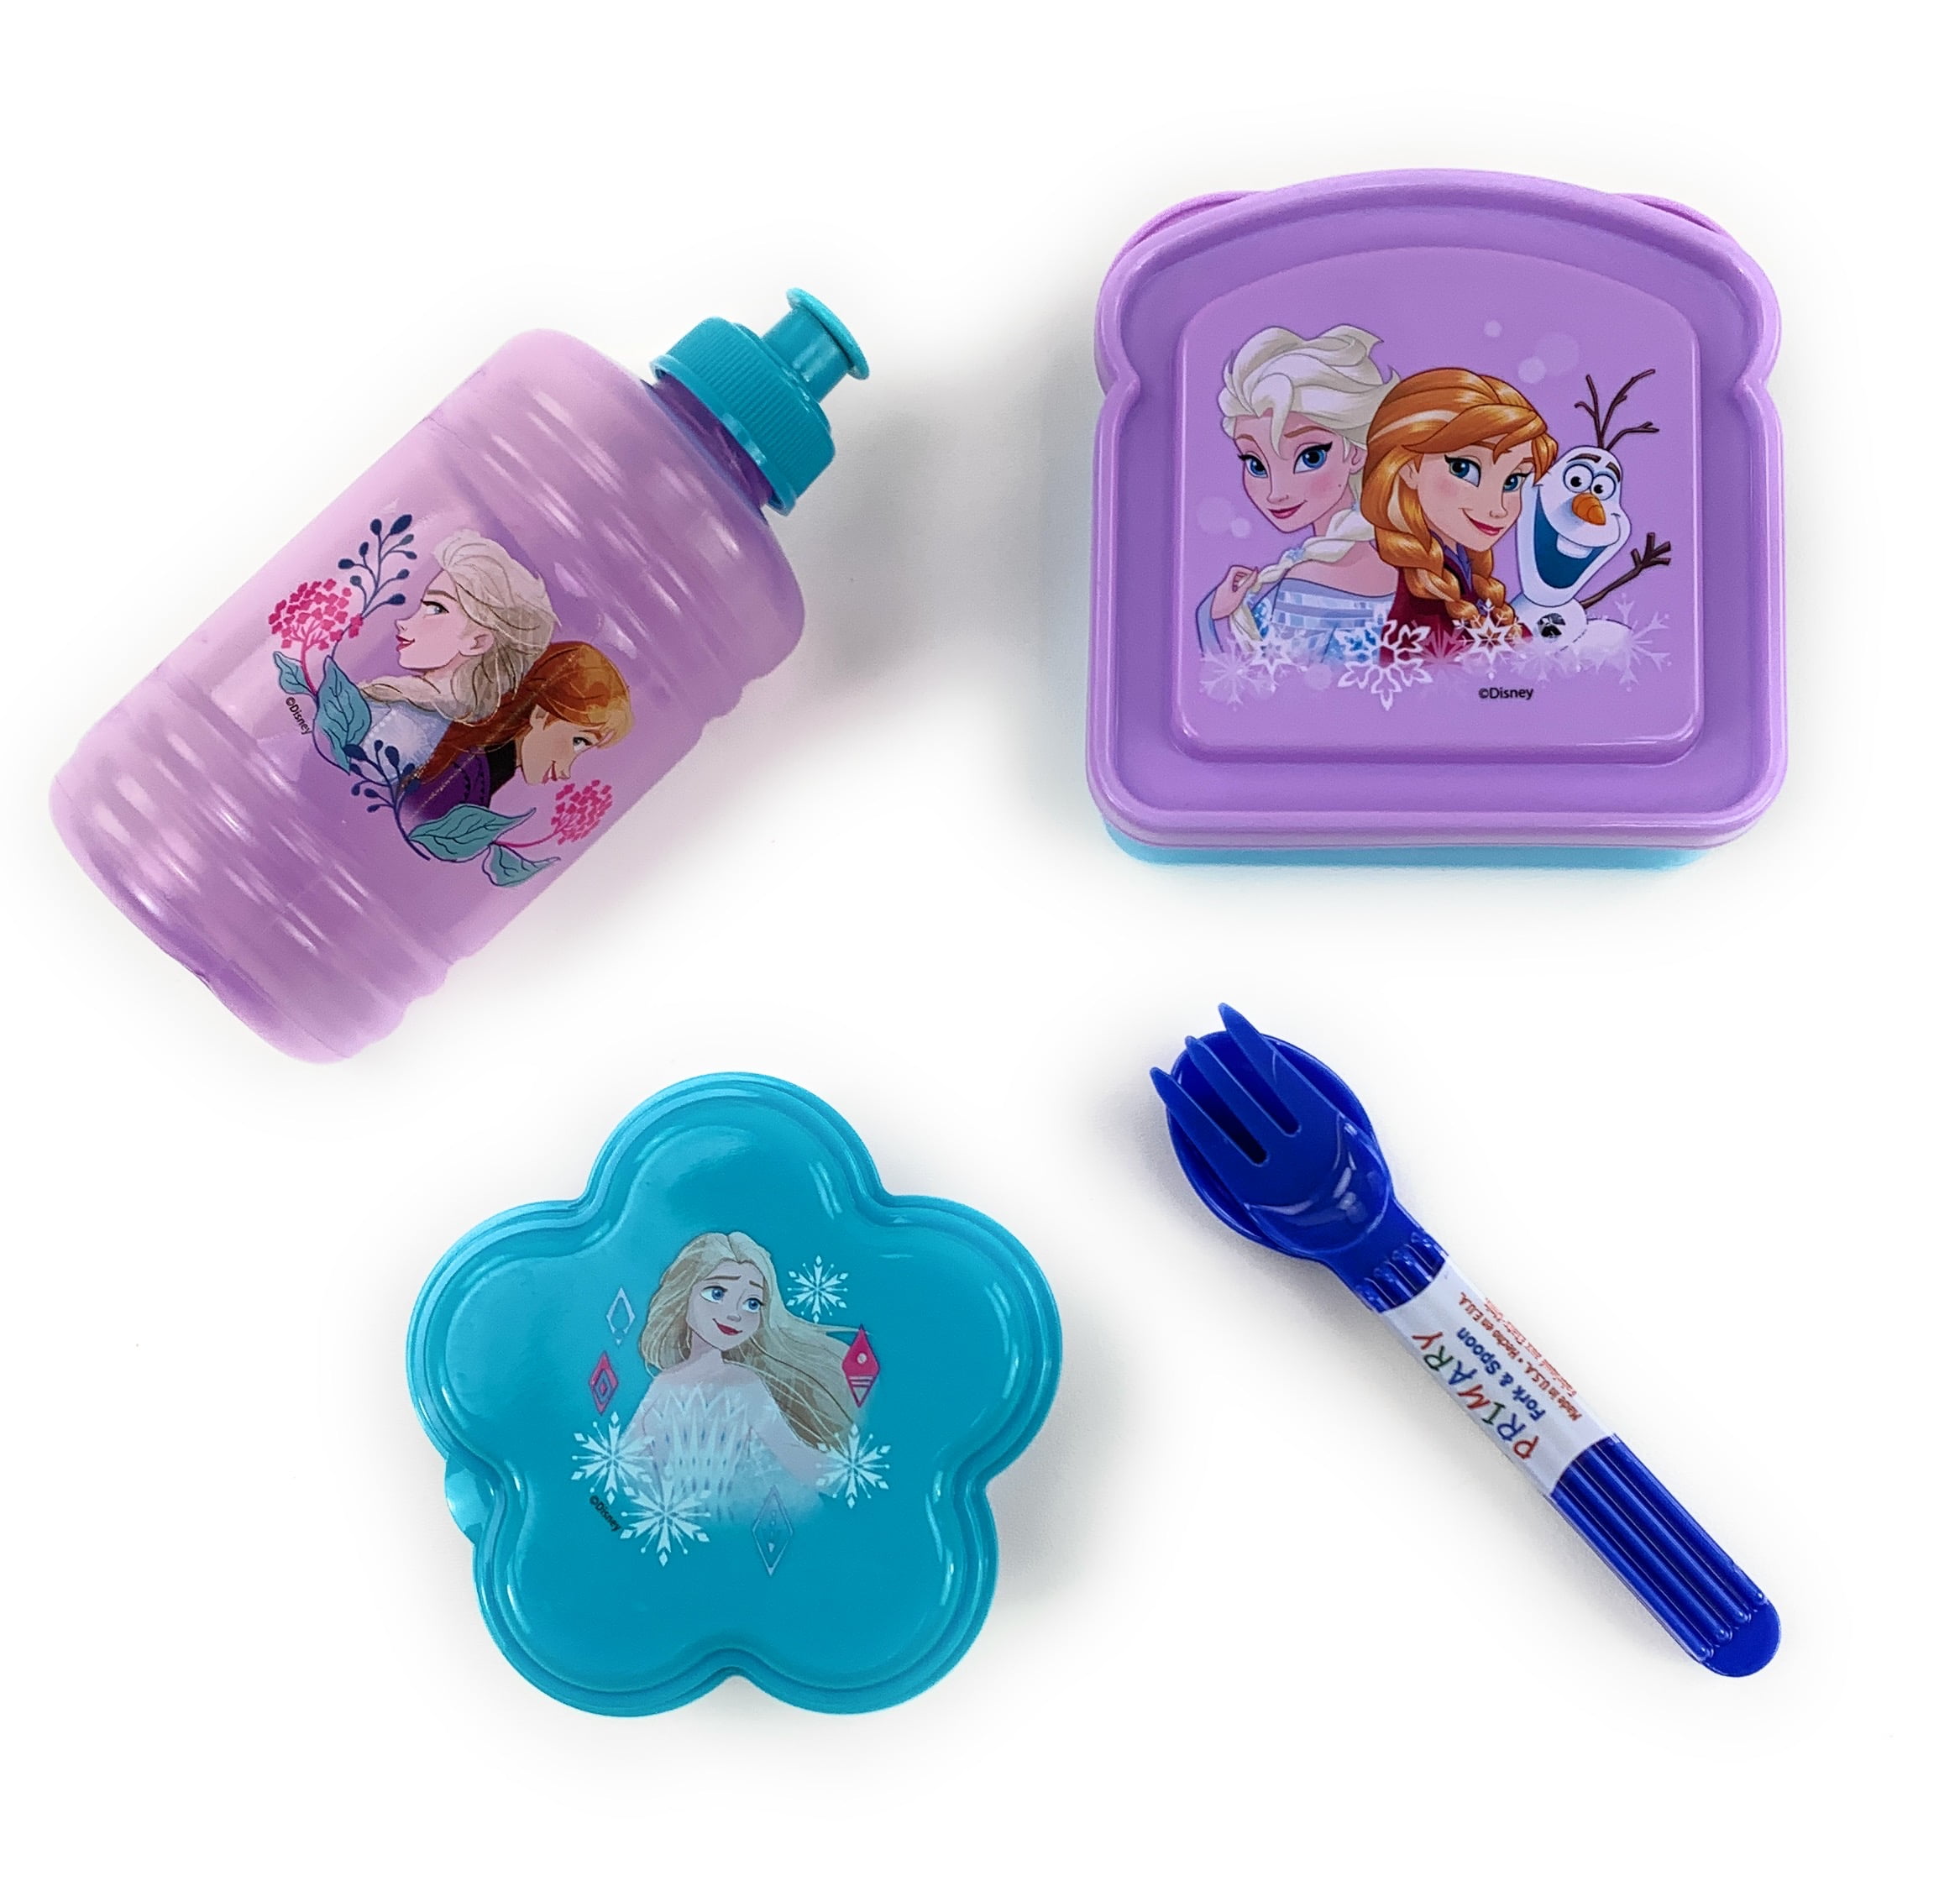 Frozen Lunch Box For Girls Kids Bundle Zuland Frozen Algeria